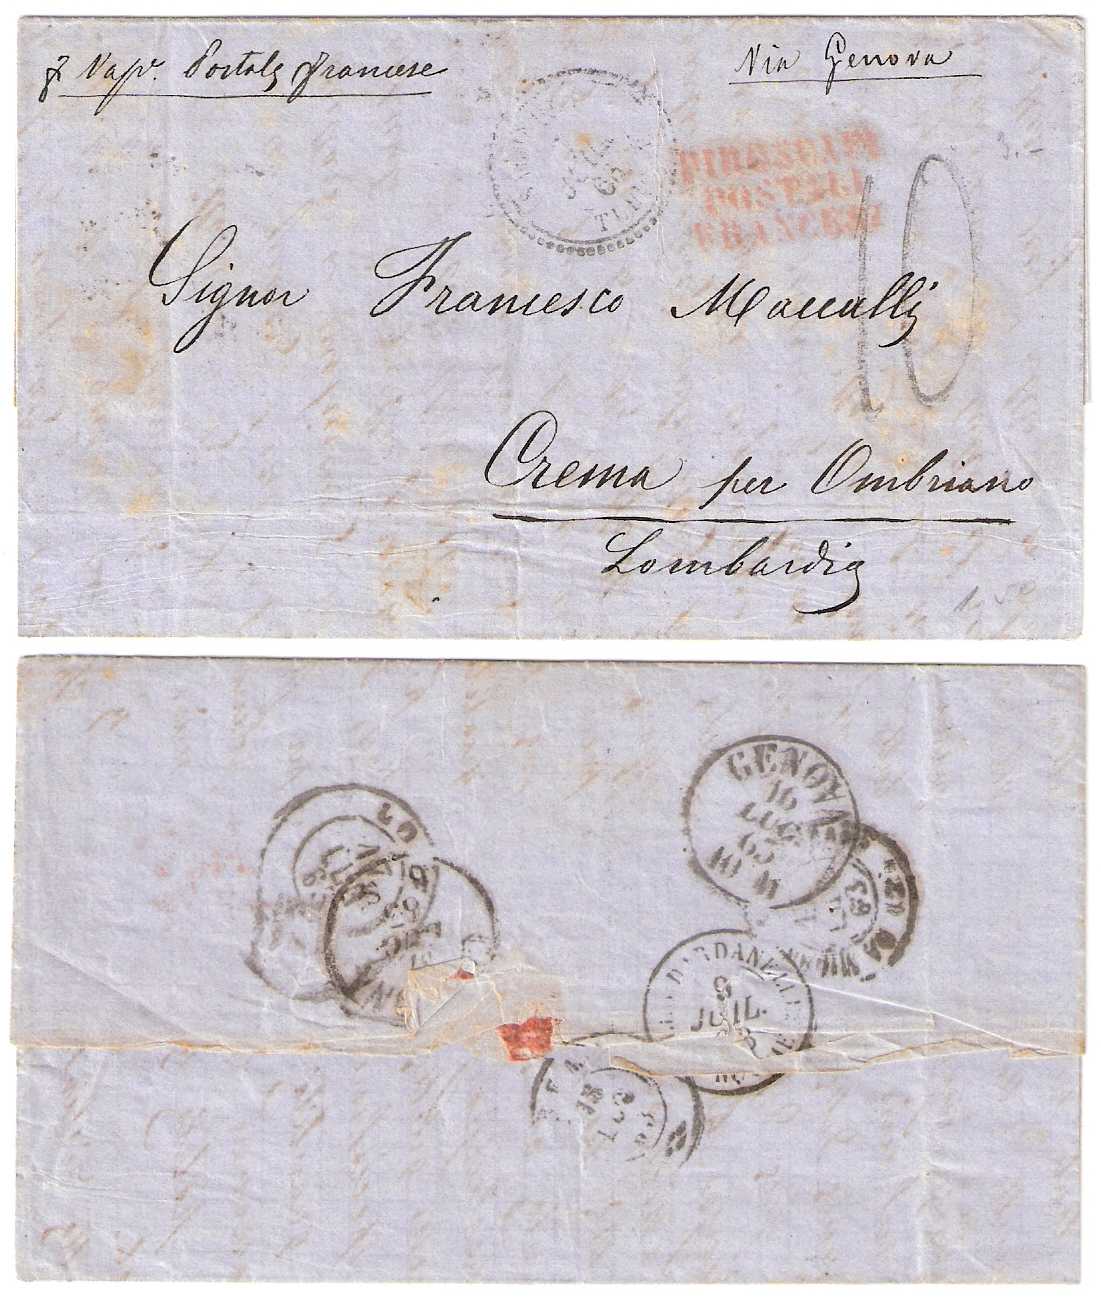 7.7.1863 Thessalonca Bureau Francais Prephilatelic Letter